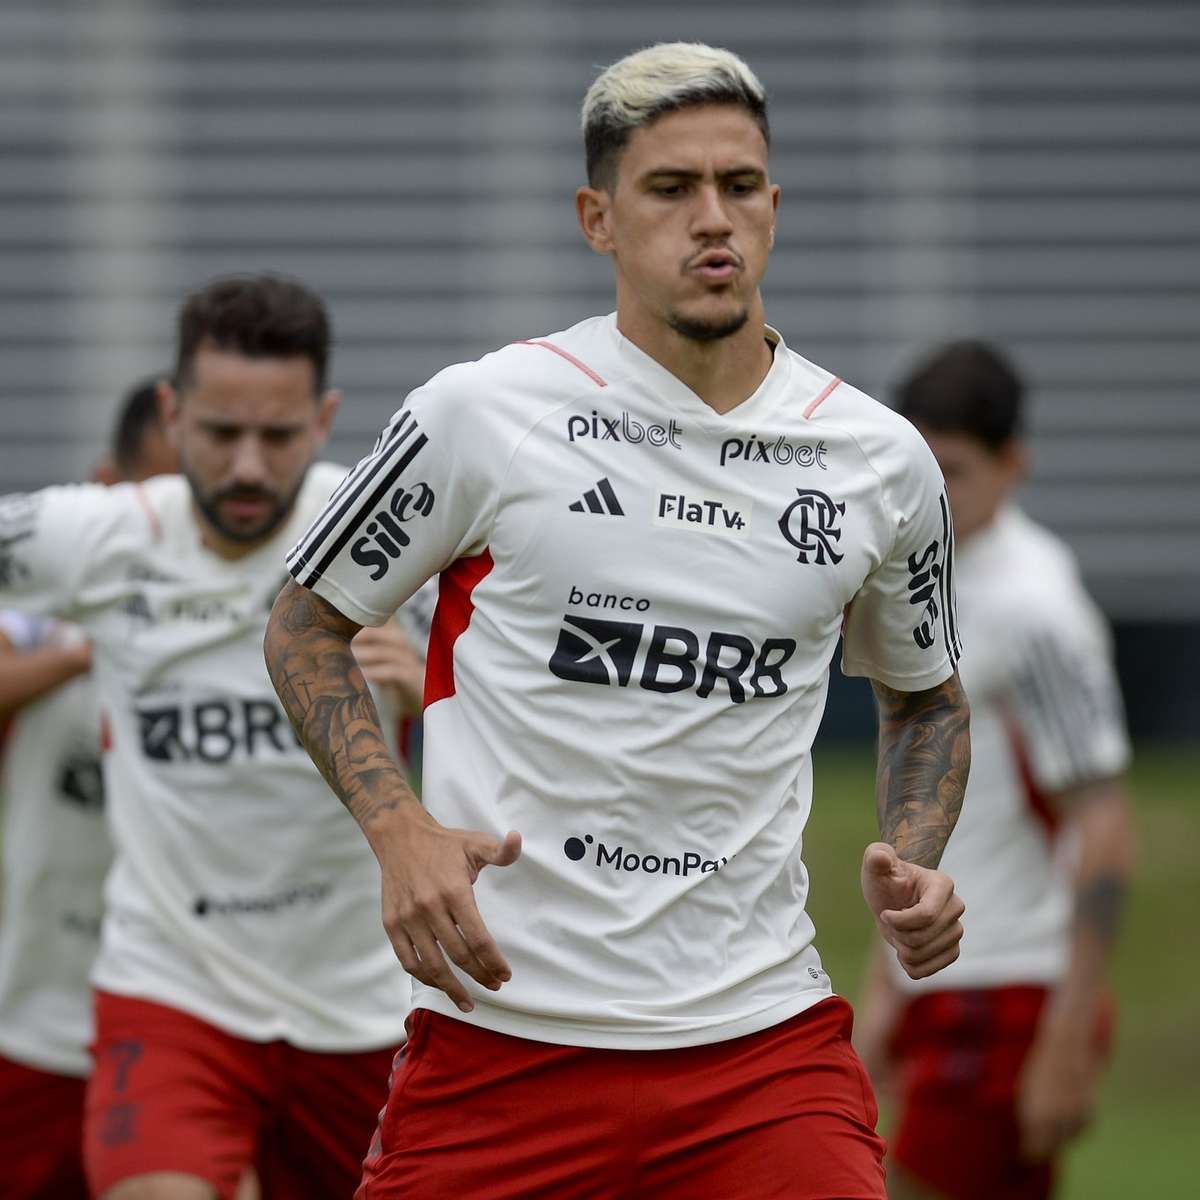 Atacante quer Santos na Libertadores e acredita em permanência de Sampaoli  